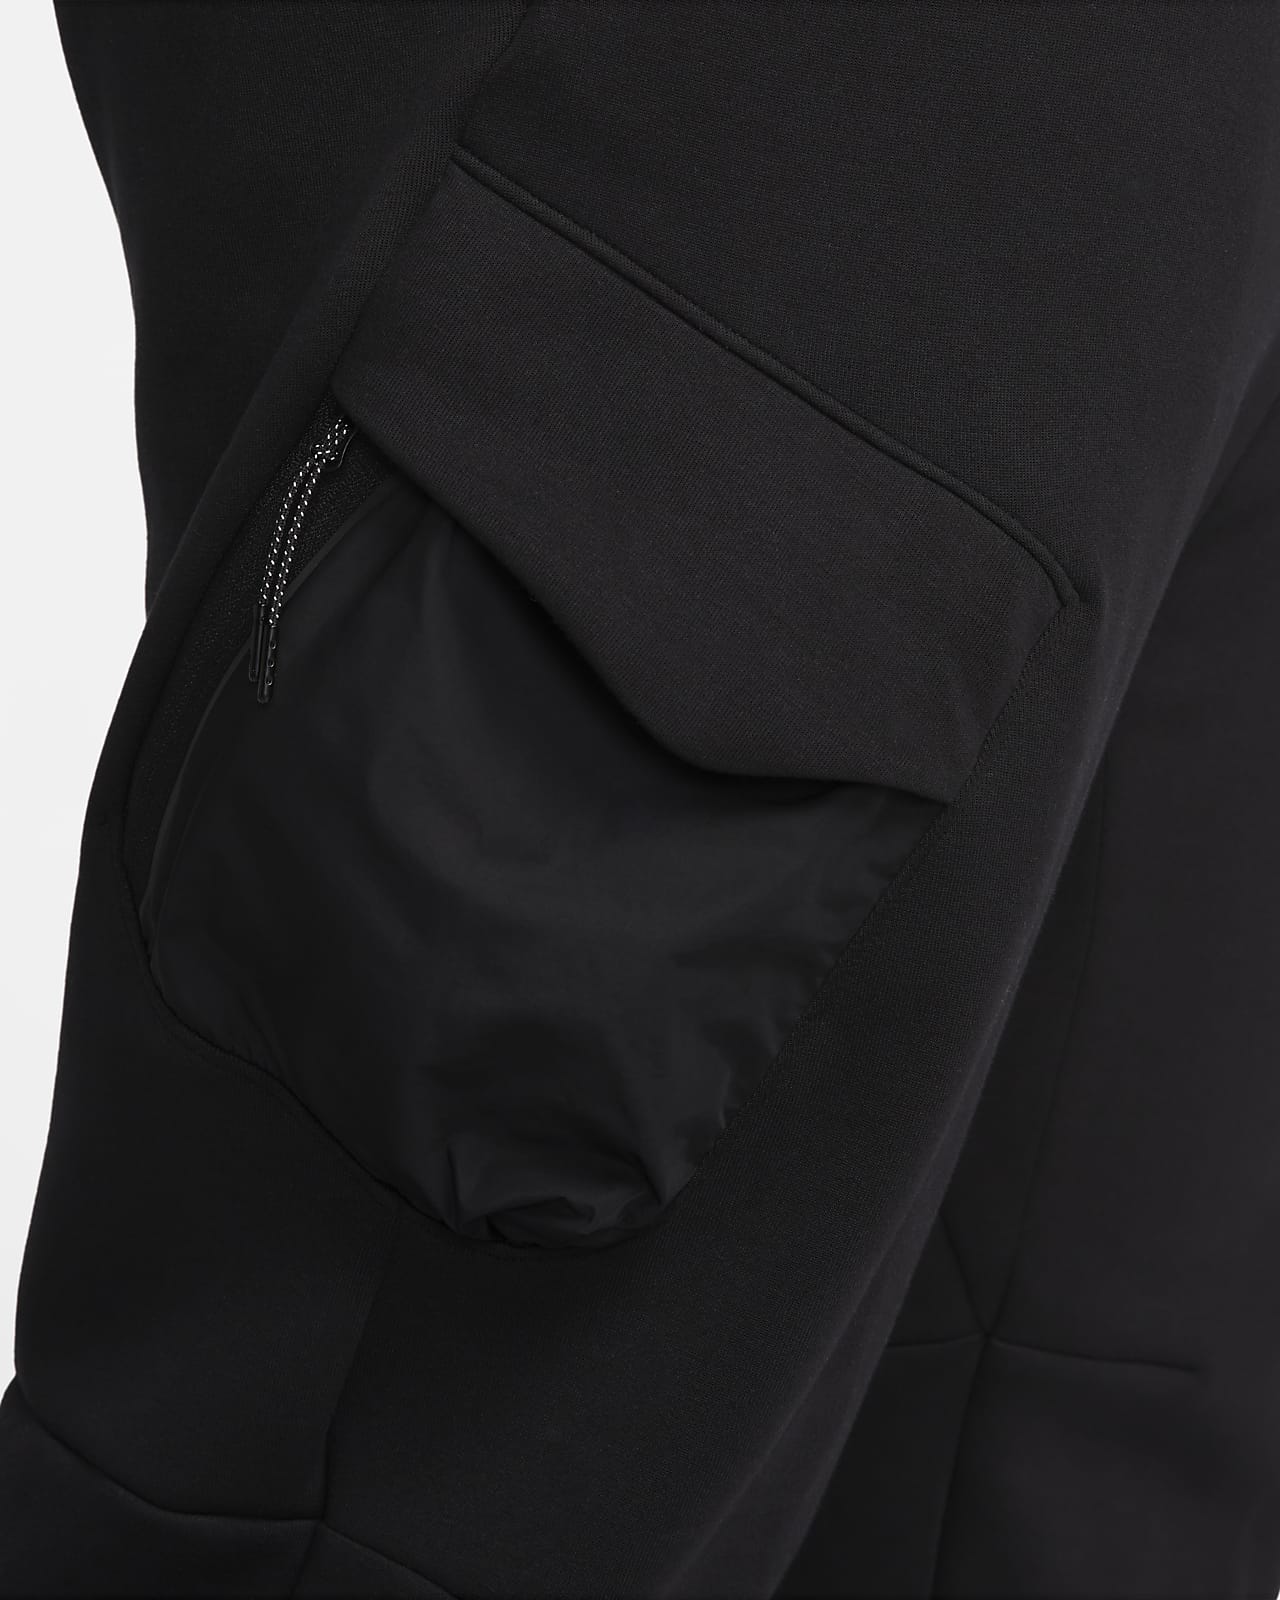 Nike Sportswear Men's Unlined Utility Cargo Pants, Black/White, X